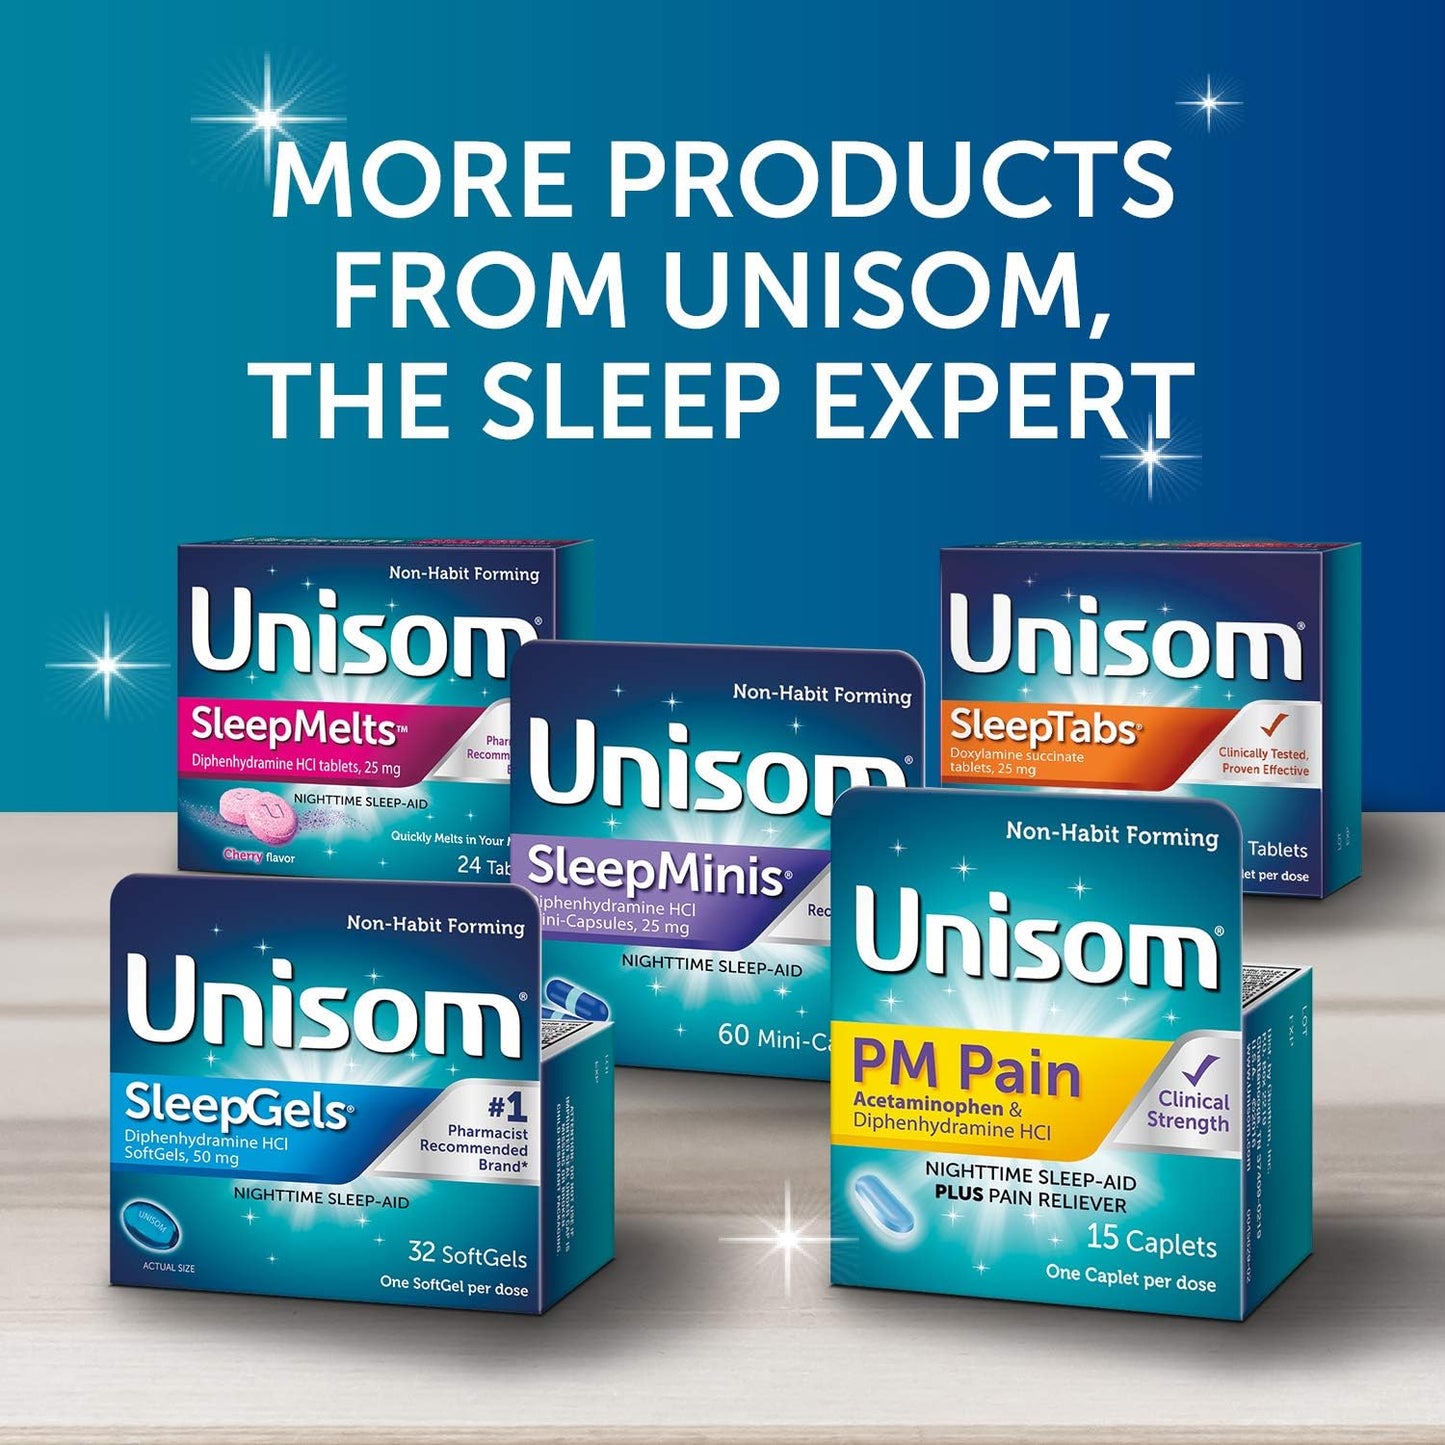 Unisom SleepTabs Nighttime Sleep-aid 48 Tablets 2 PACK